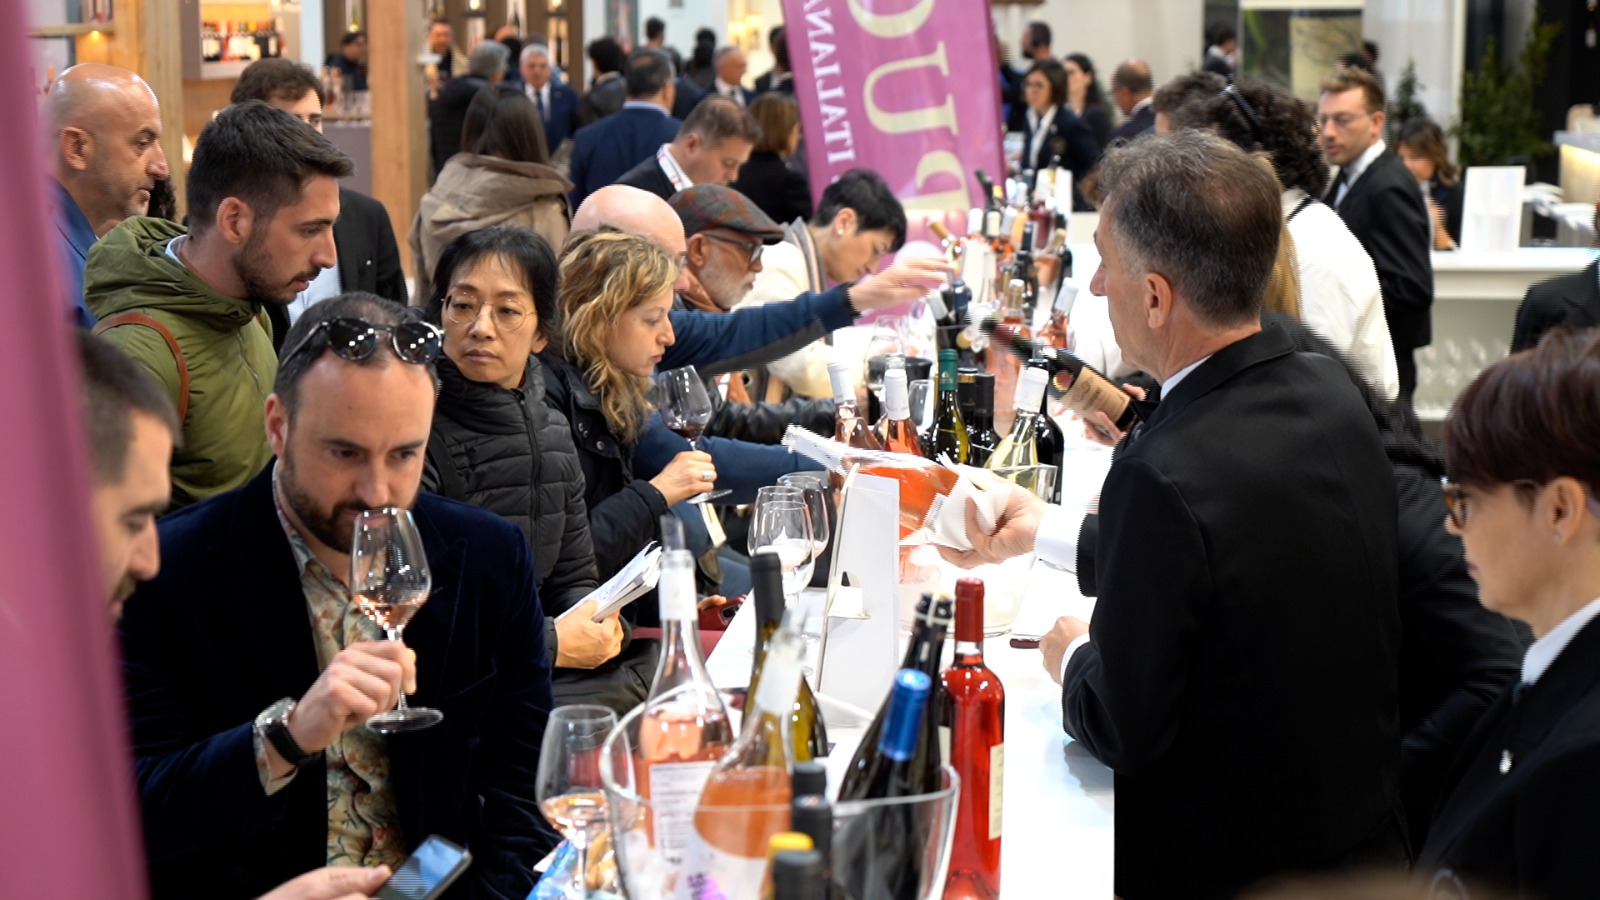 Galleria Taglio del nastro della Puglia al Vinitaly 2023, Pentassuglia: “Manteniamo alto il livello del nostro settore vitivinicolo, specialmente sui mercati internazionali” - Diapositiva 6 di 13